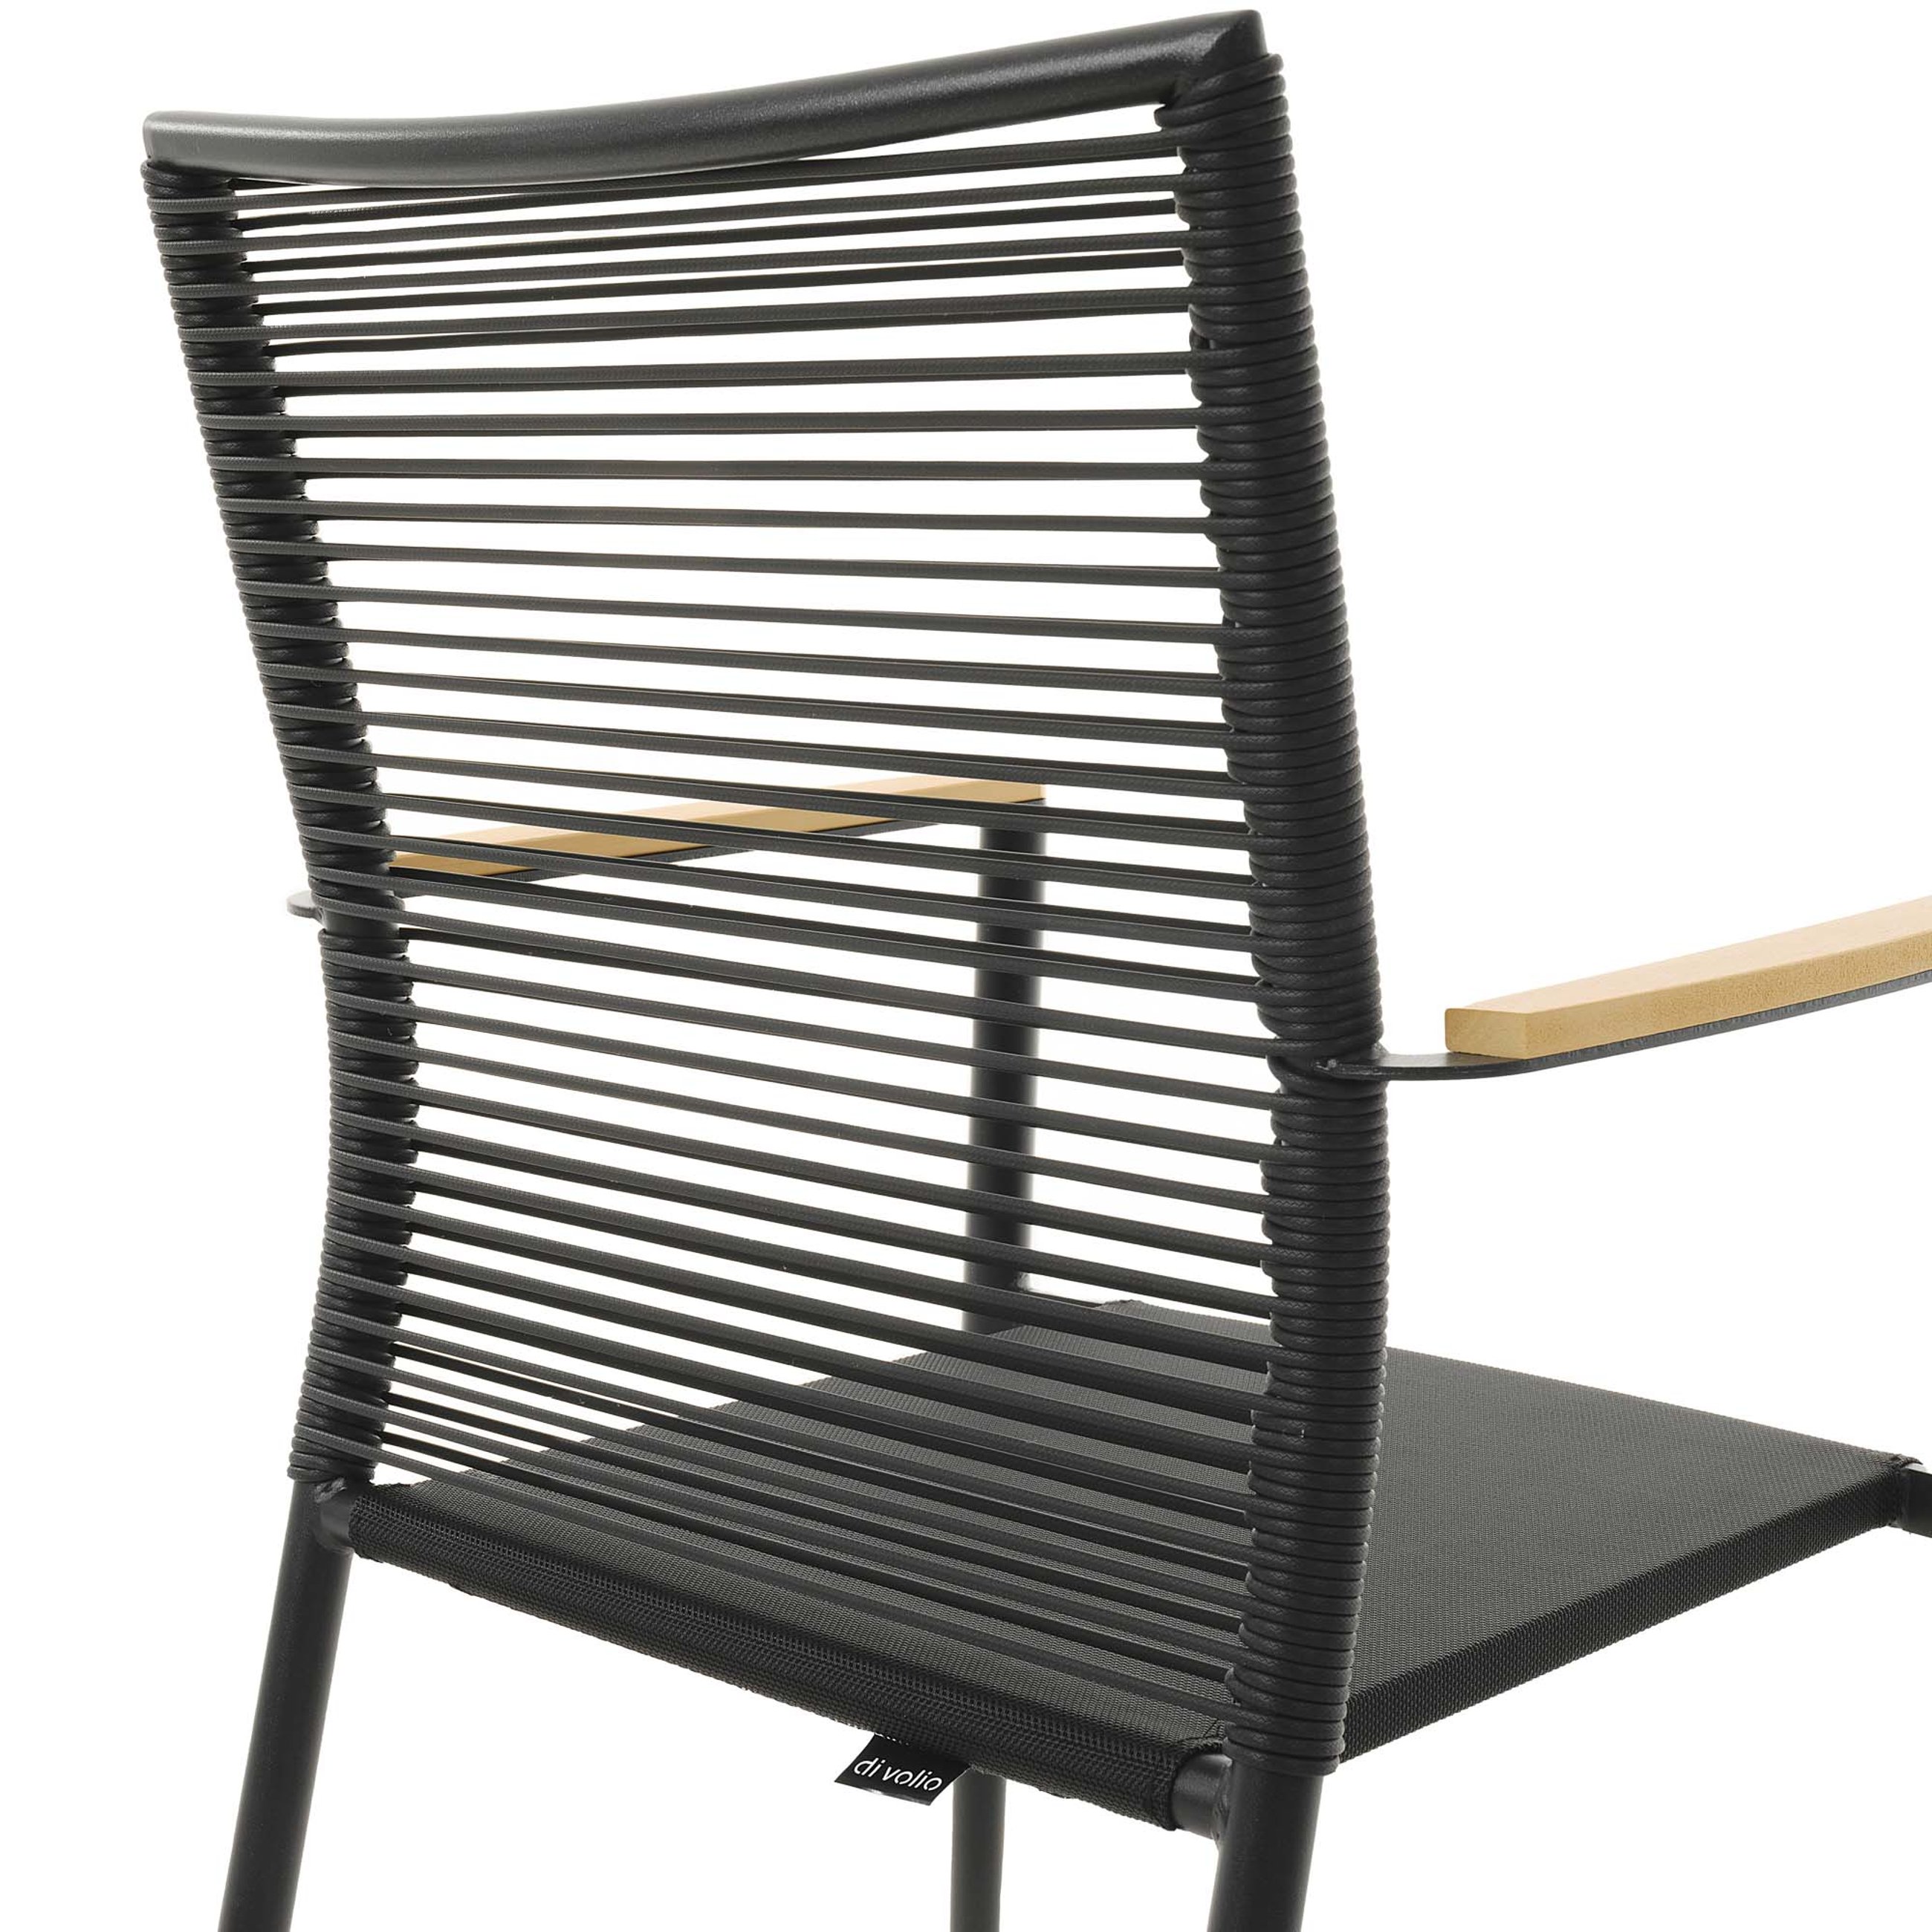 Oparcie krzesła Asti zostało wykonane z trwałego technorattanu w kolorze czarnym